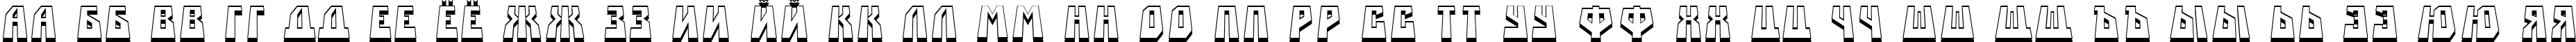 Пример написания русского алфавита шрифтом a_SimplerPrspSh